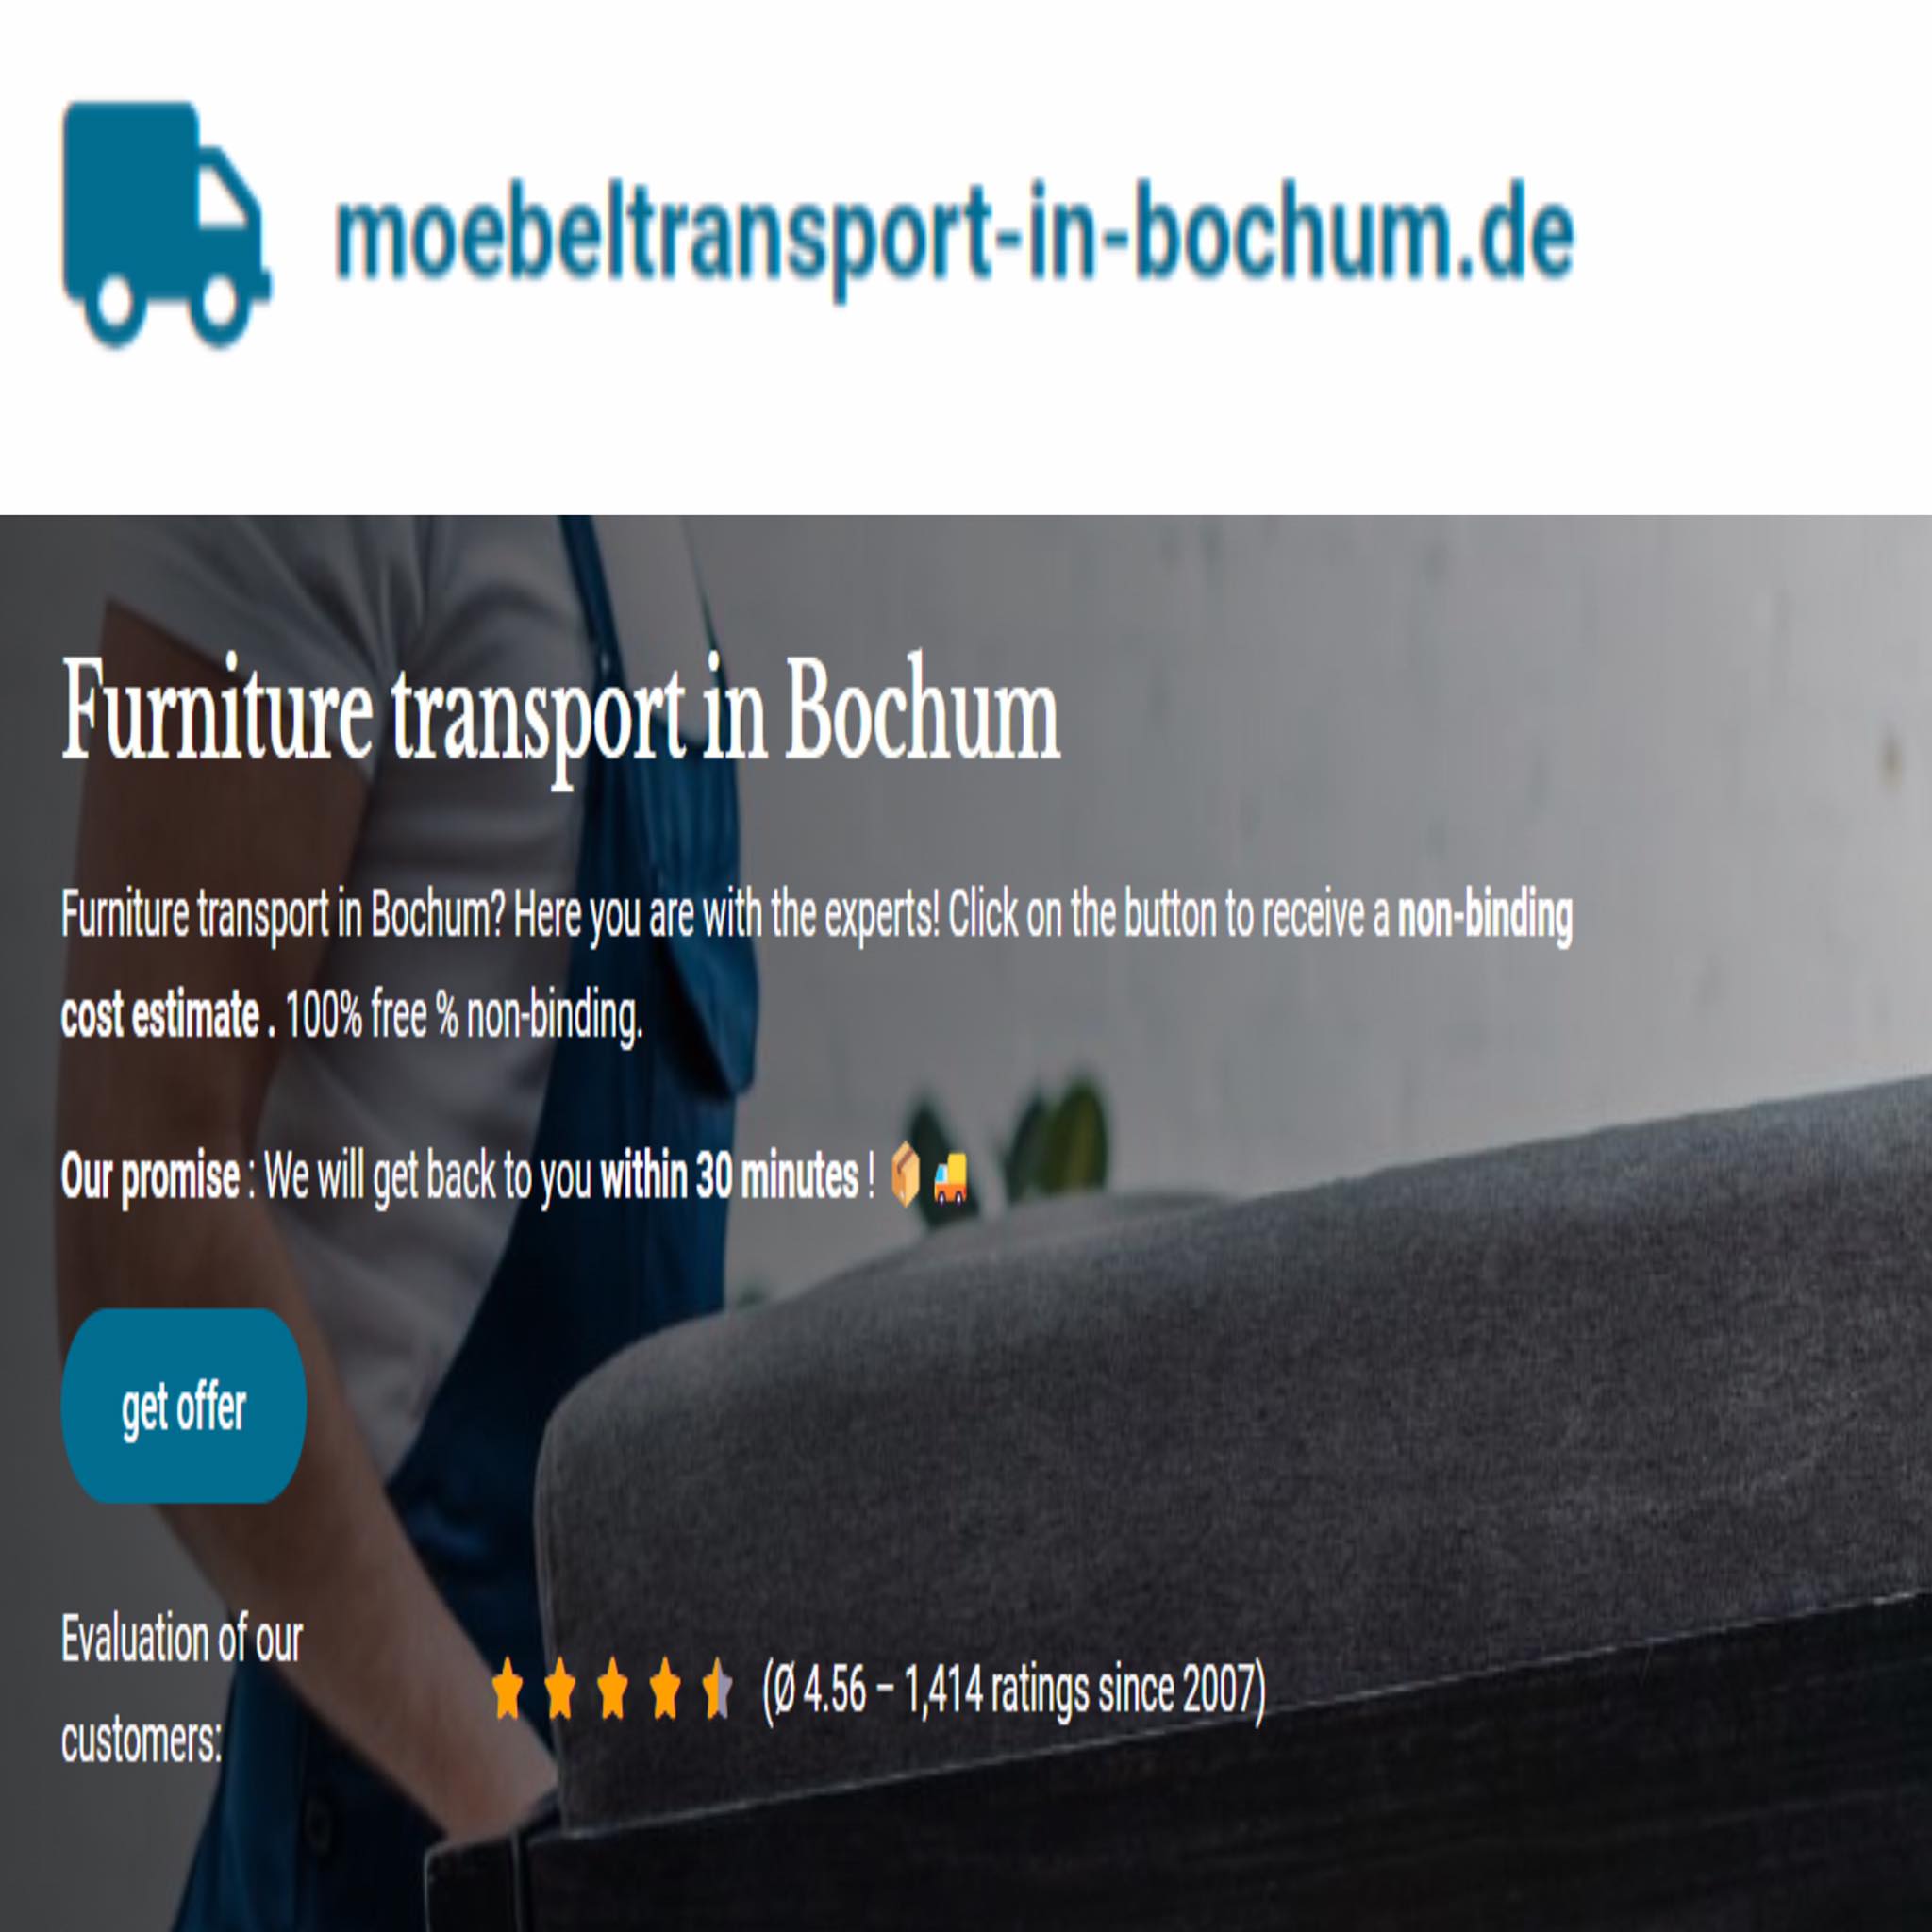 moebeltransport-in-bochum.de in Bochum